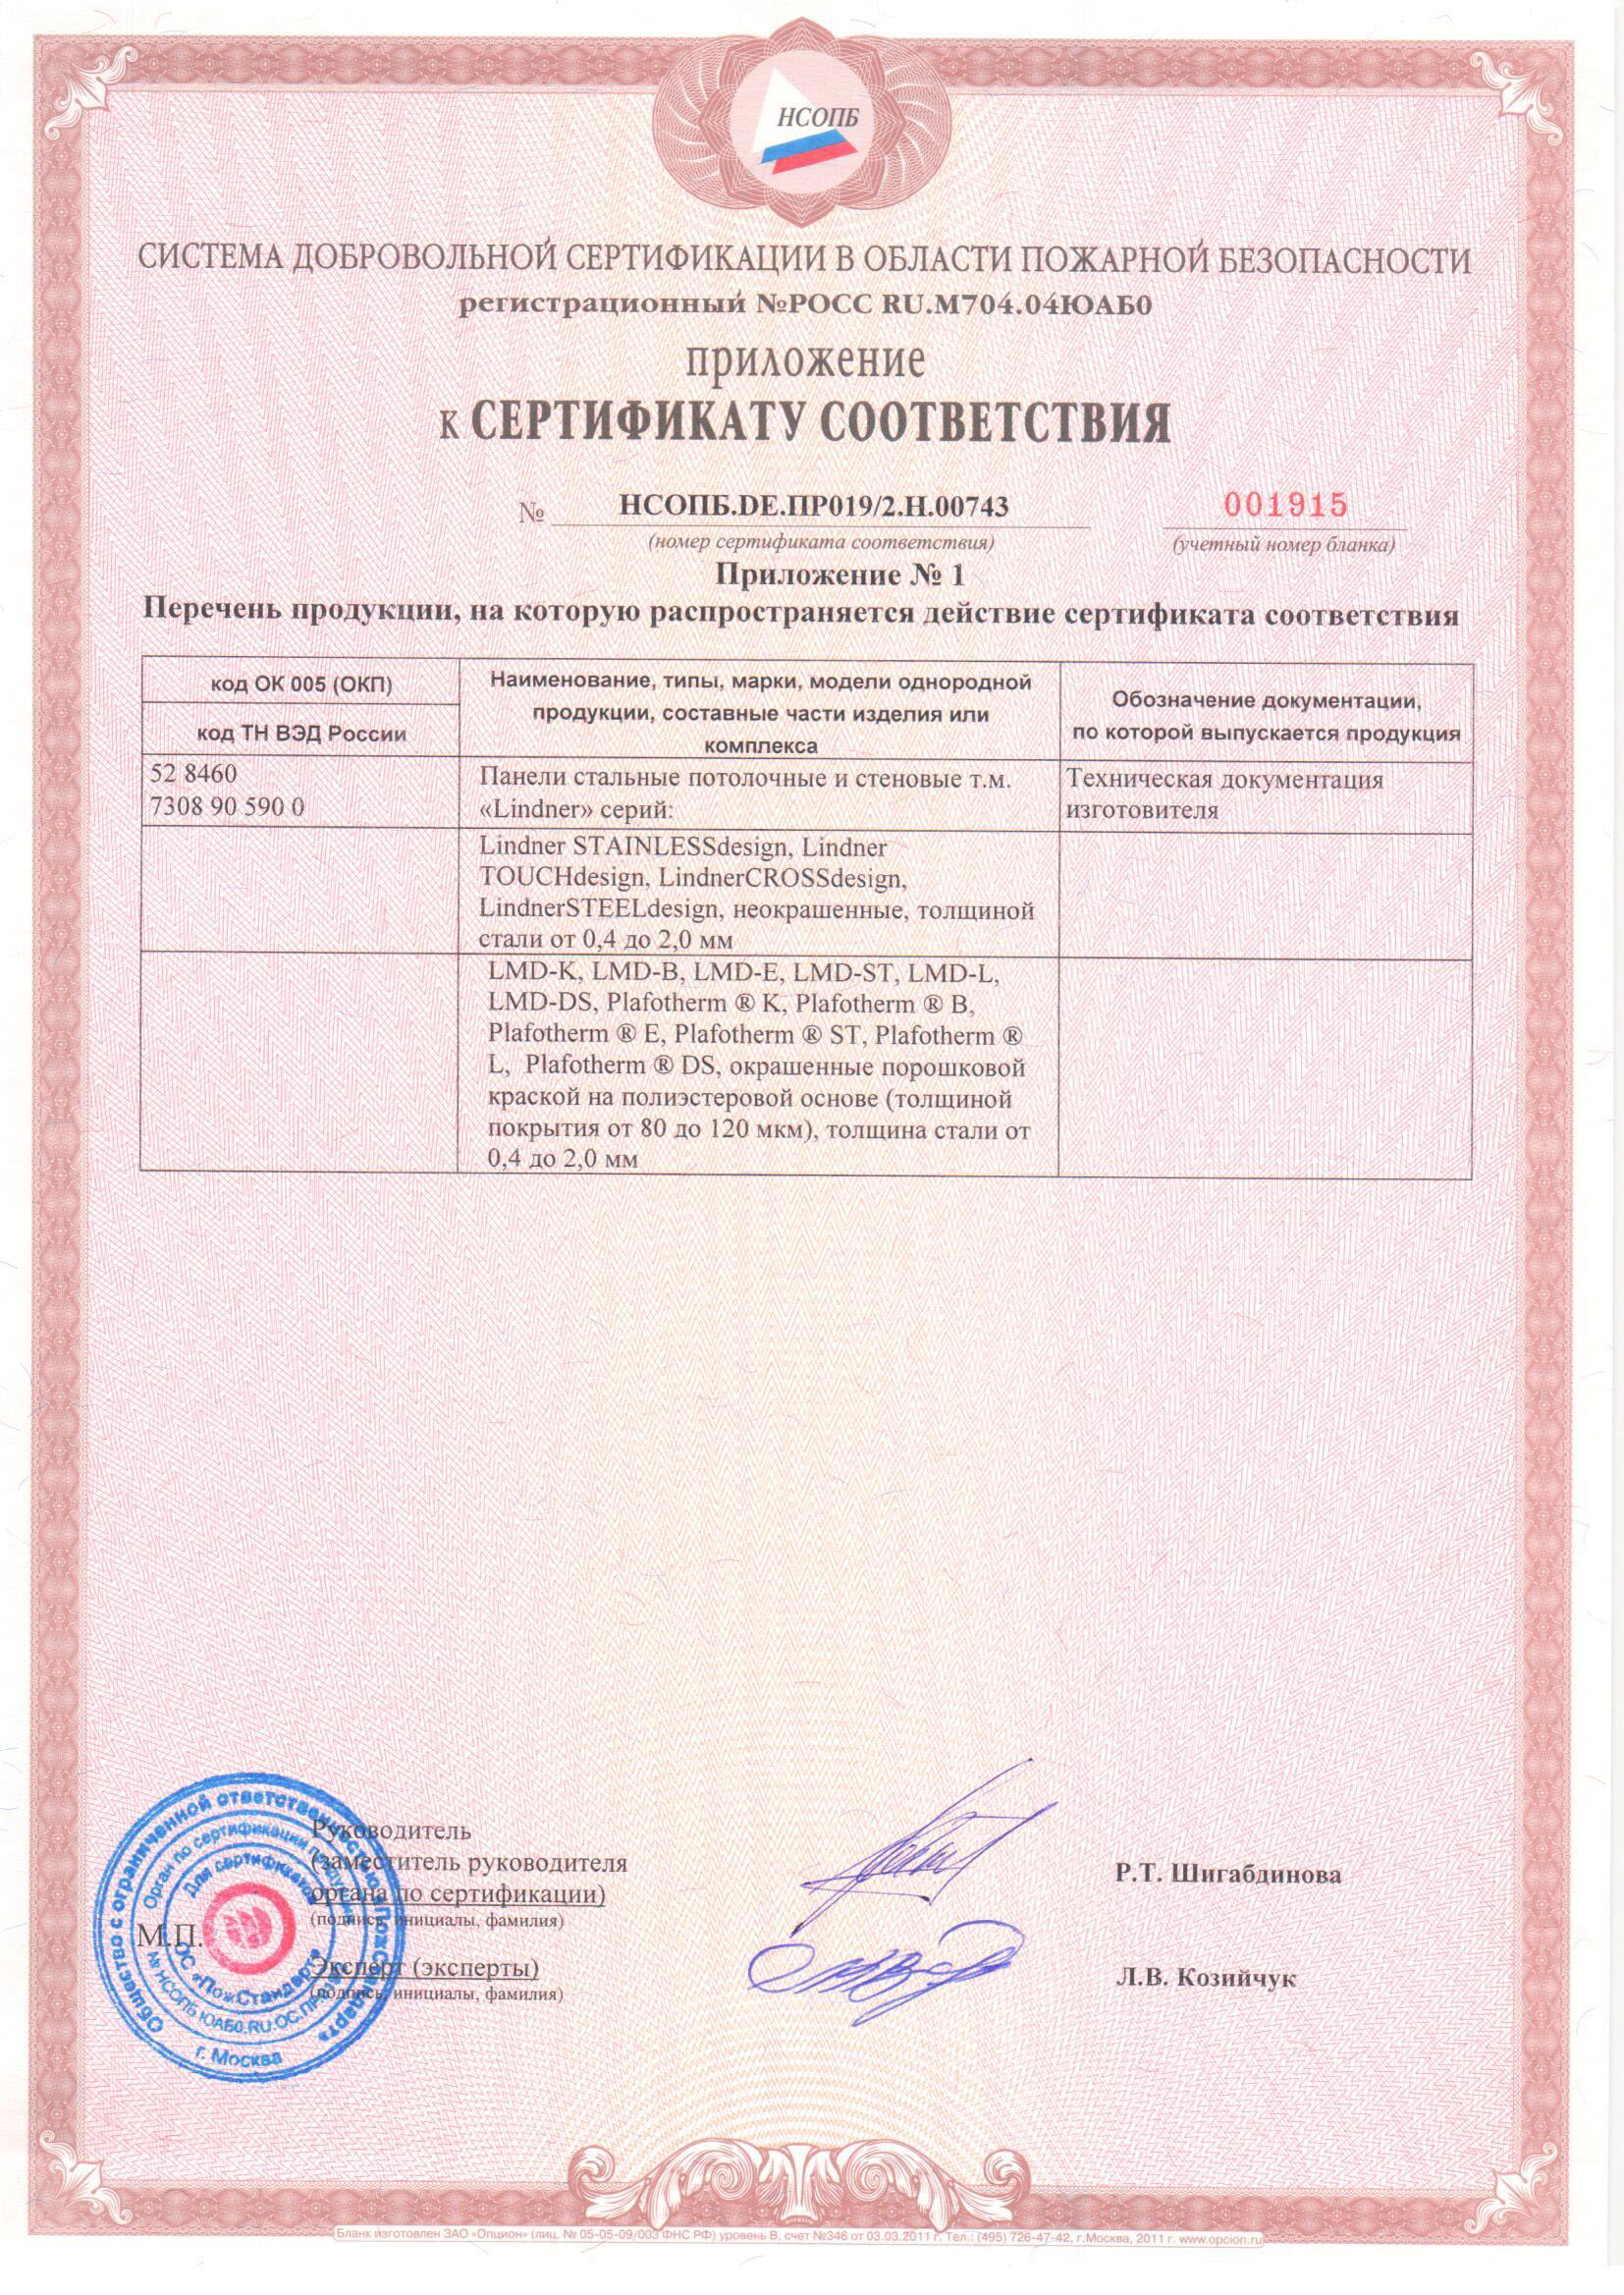 Приложение к сертификату соответствия ( панели стальные потолочные и стеновые т.м Lindner)